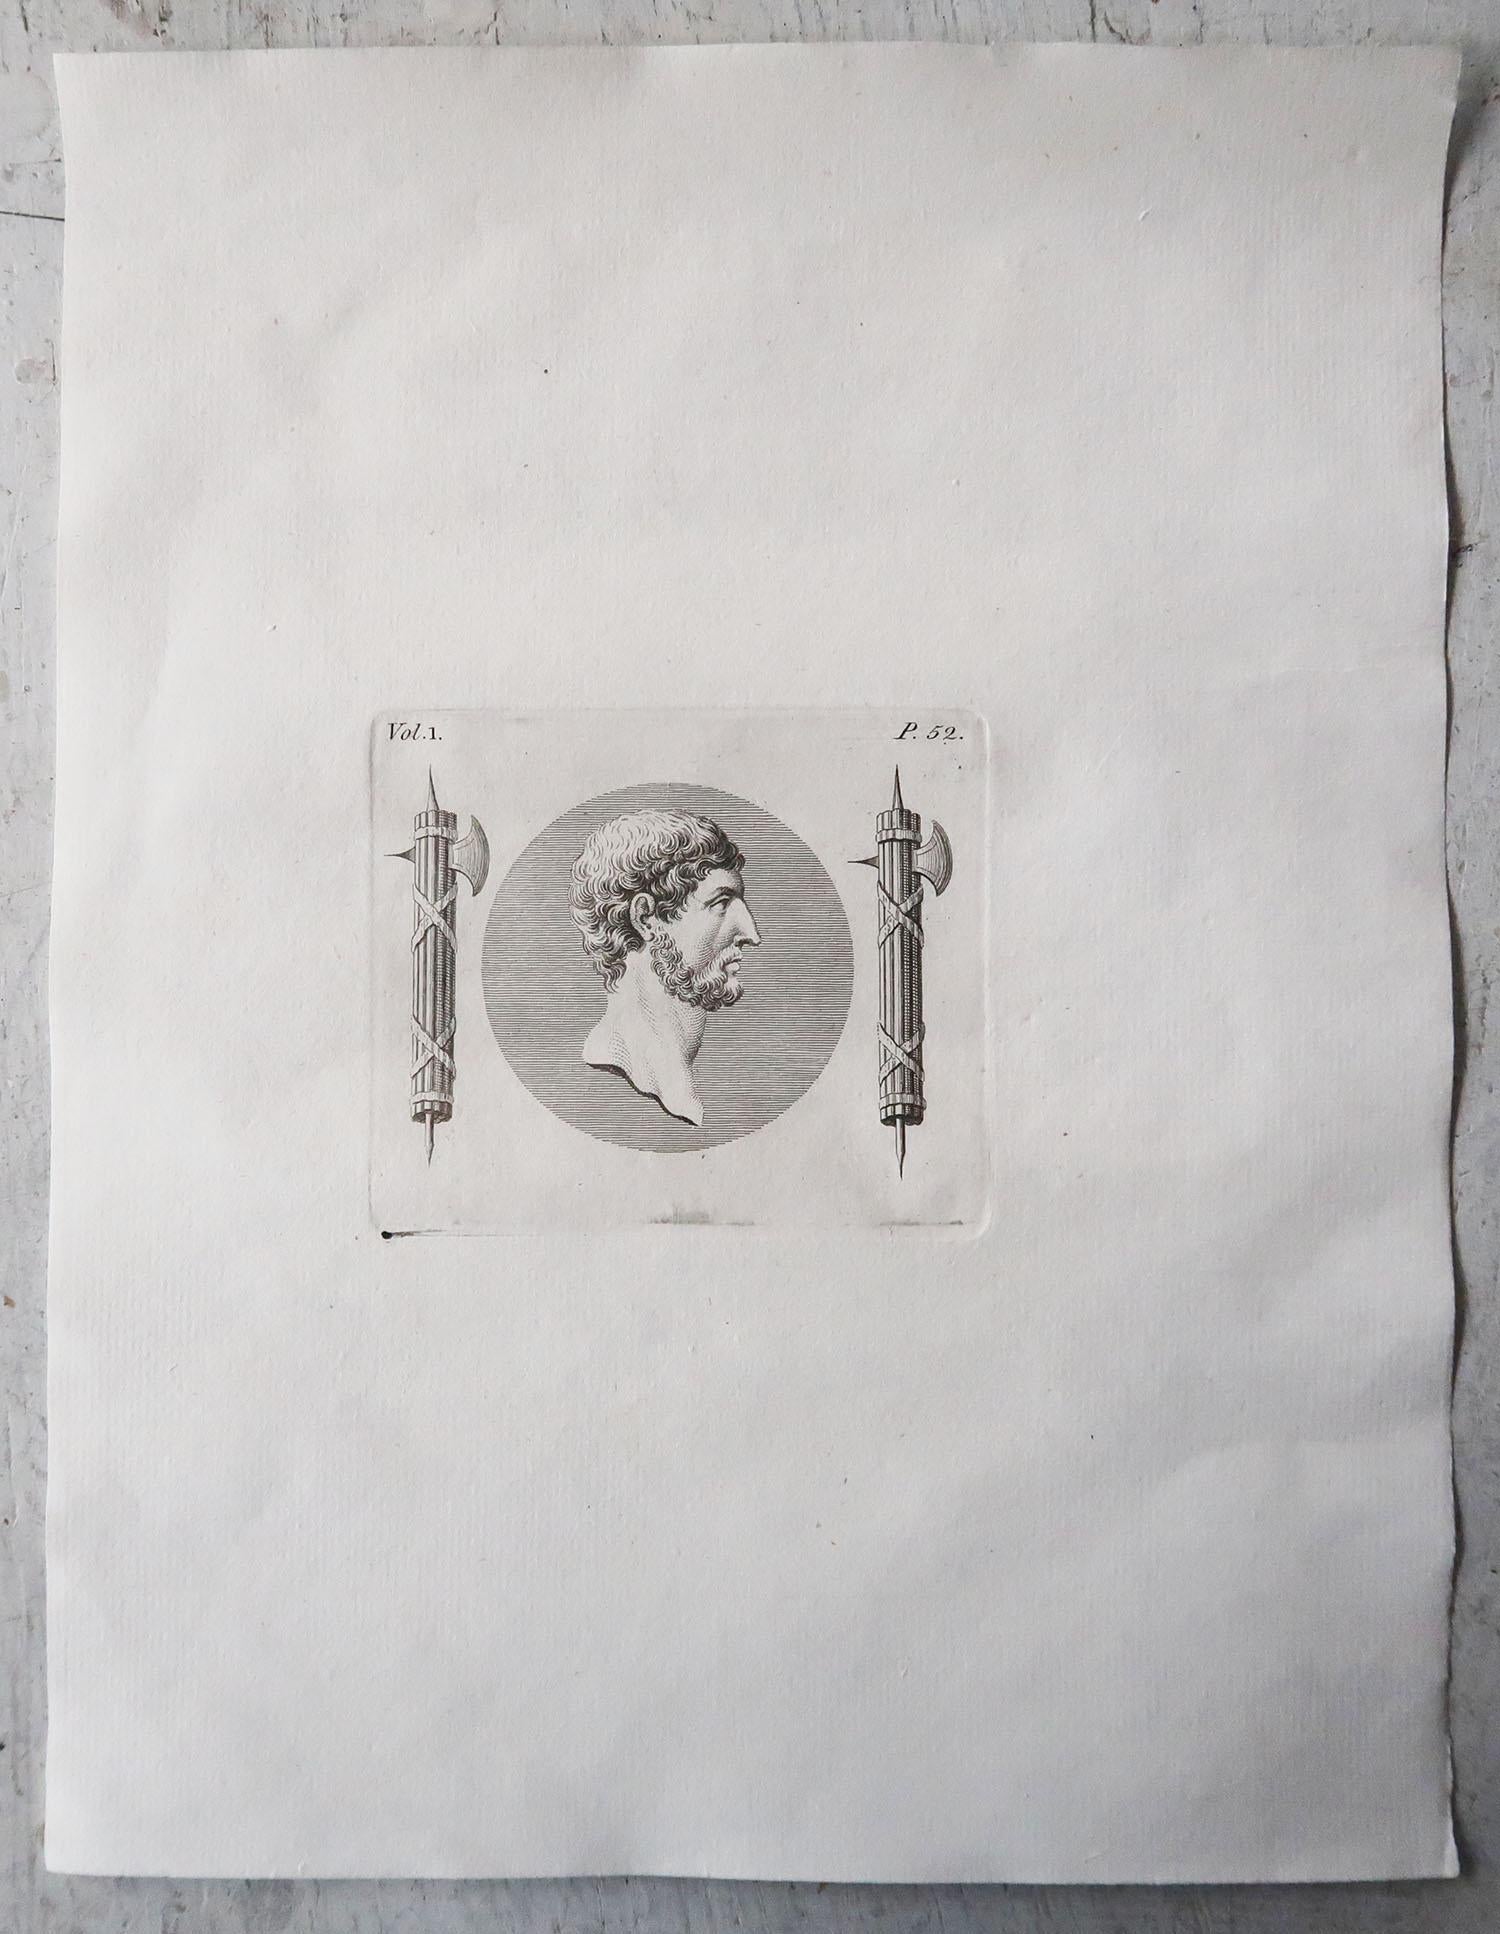 Prachtvoller Satz von 7 Porträtdrucken. Wichtige männliche und weibliche Figuren aus dem alten Rom.

Auf schönem Büttenpapier.

Kupferstiche 

Veröffentlicht um 1790

Ungerahmt.

Das angegebene Maß ist die Papiergröße eines